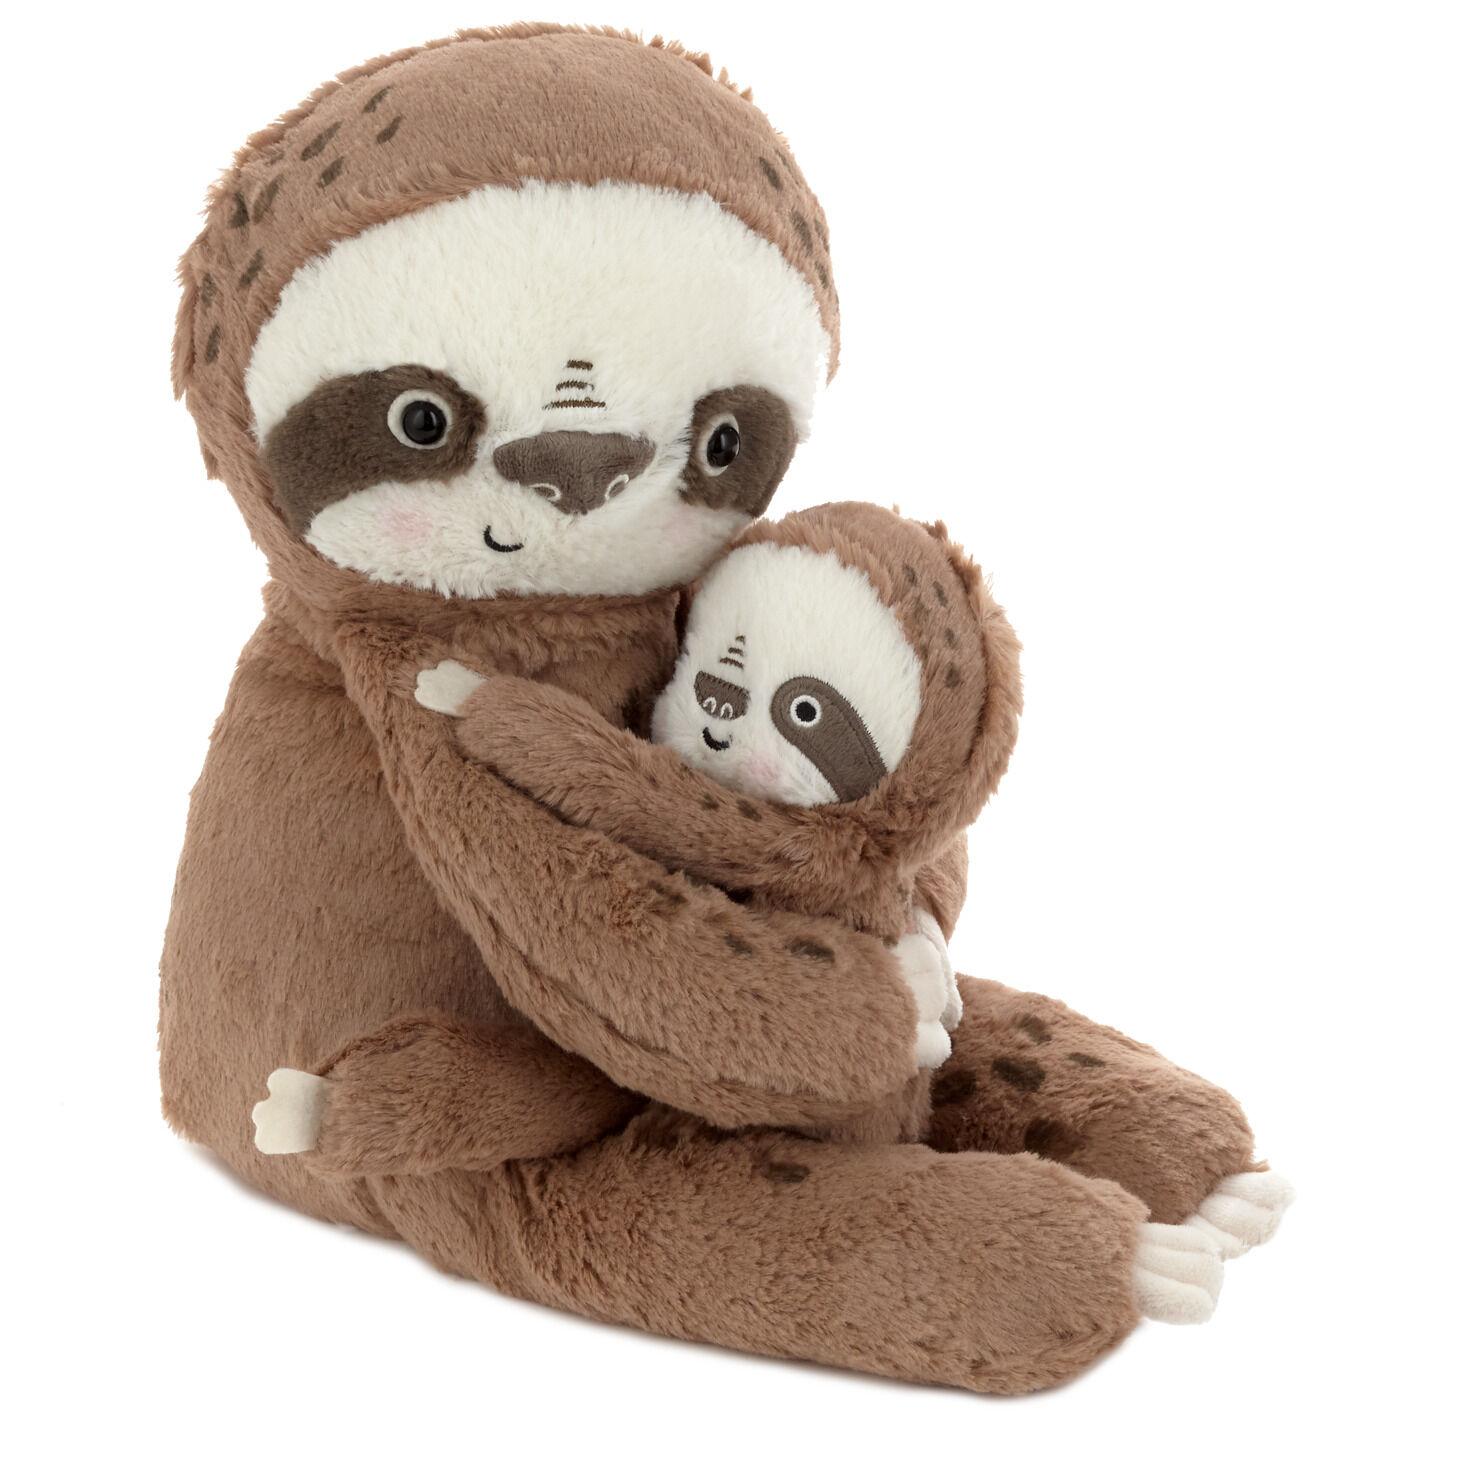 big sloth stuffed animal